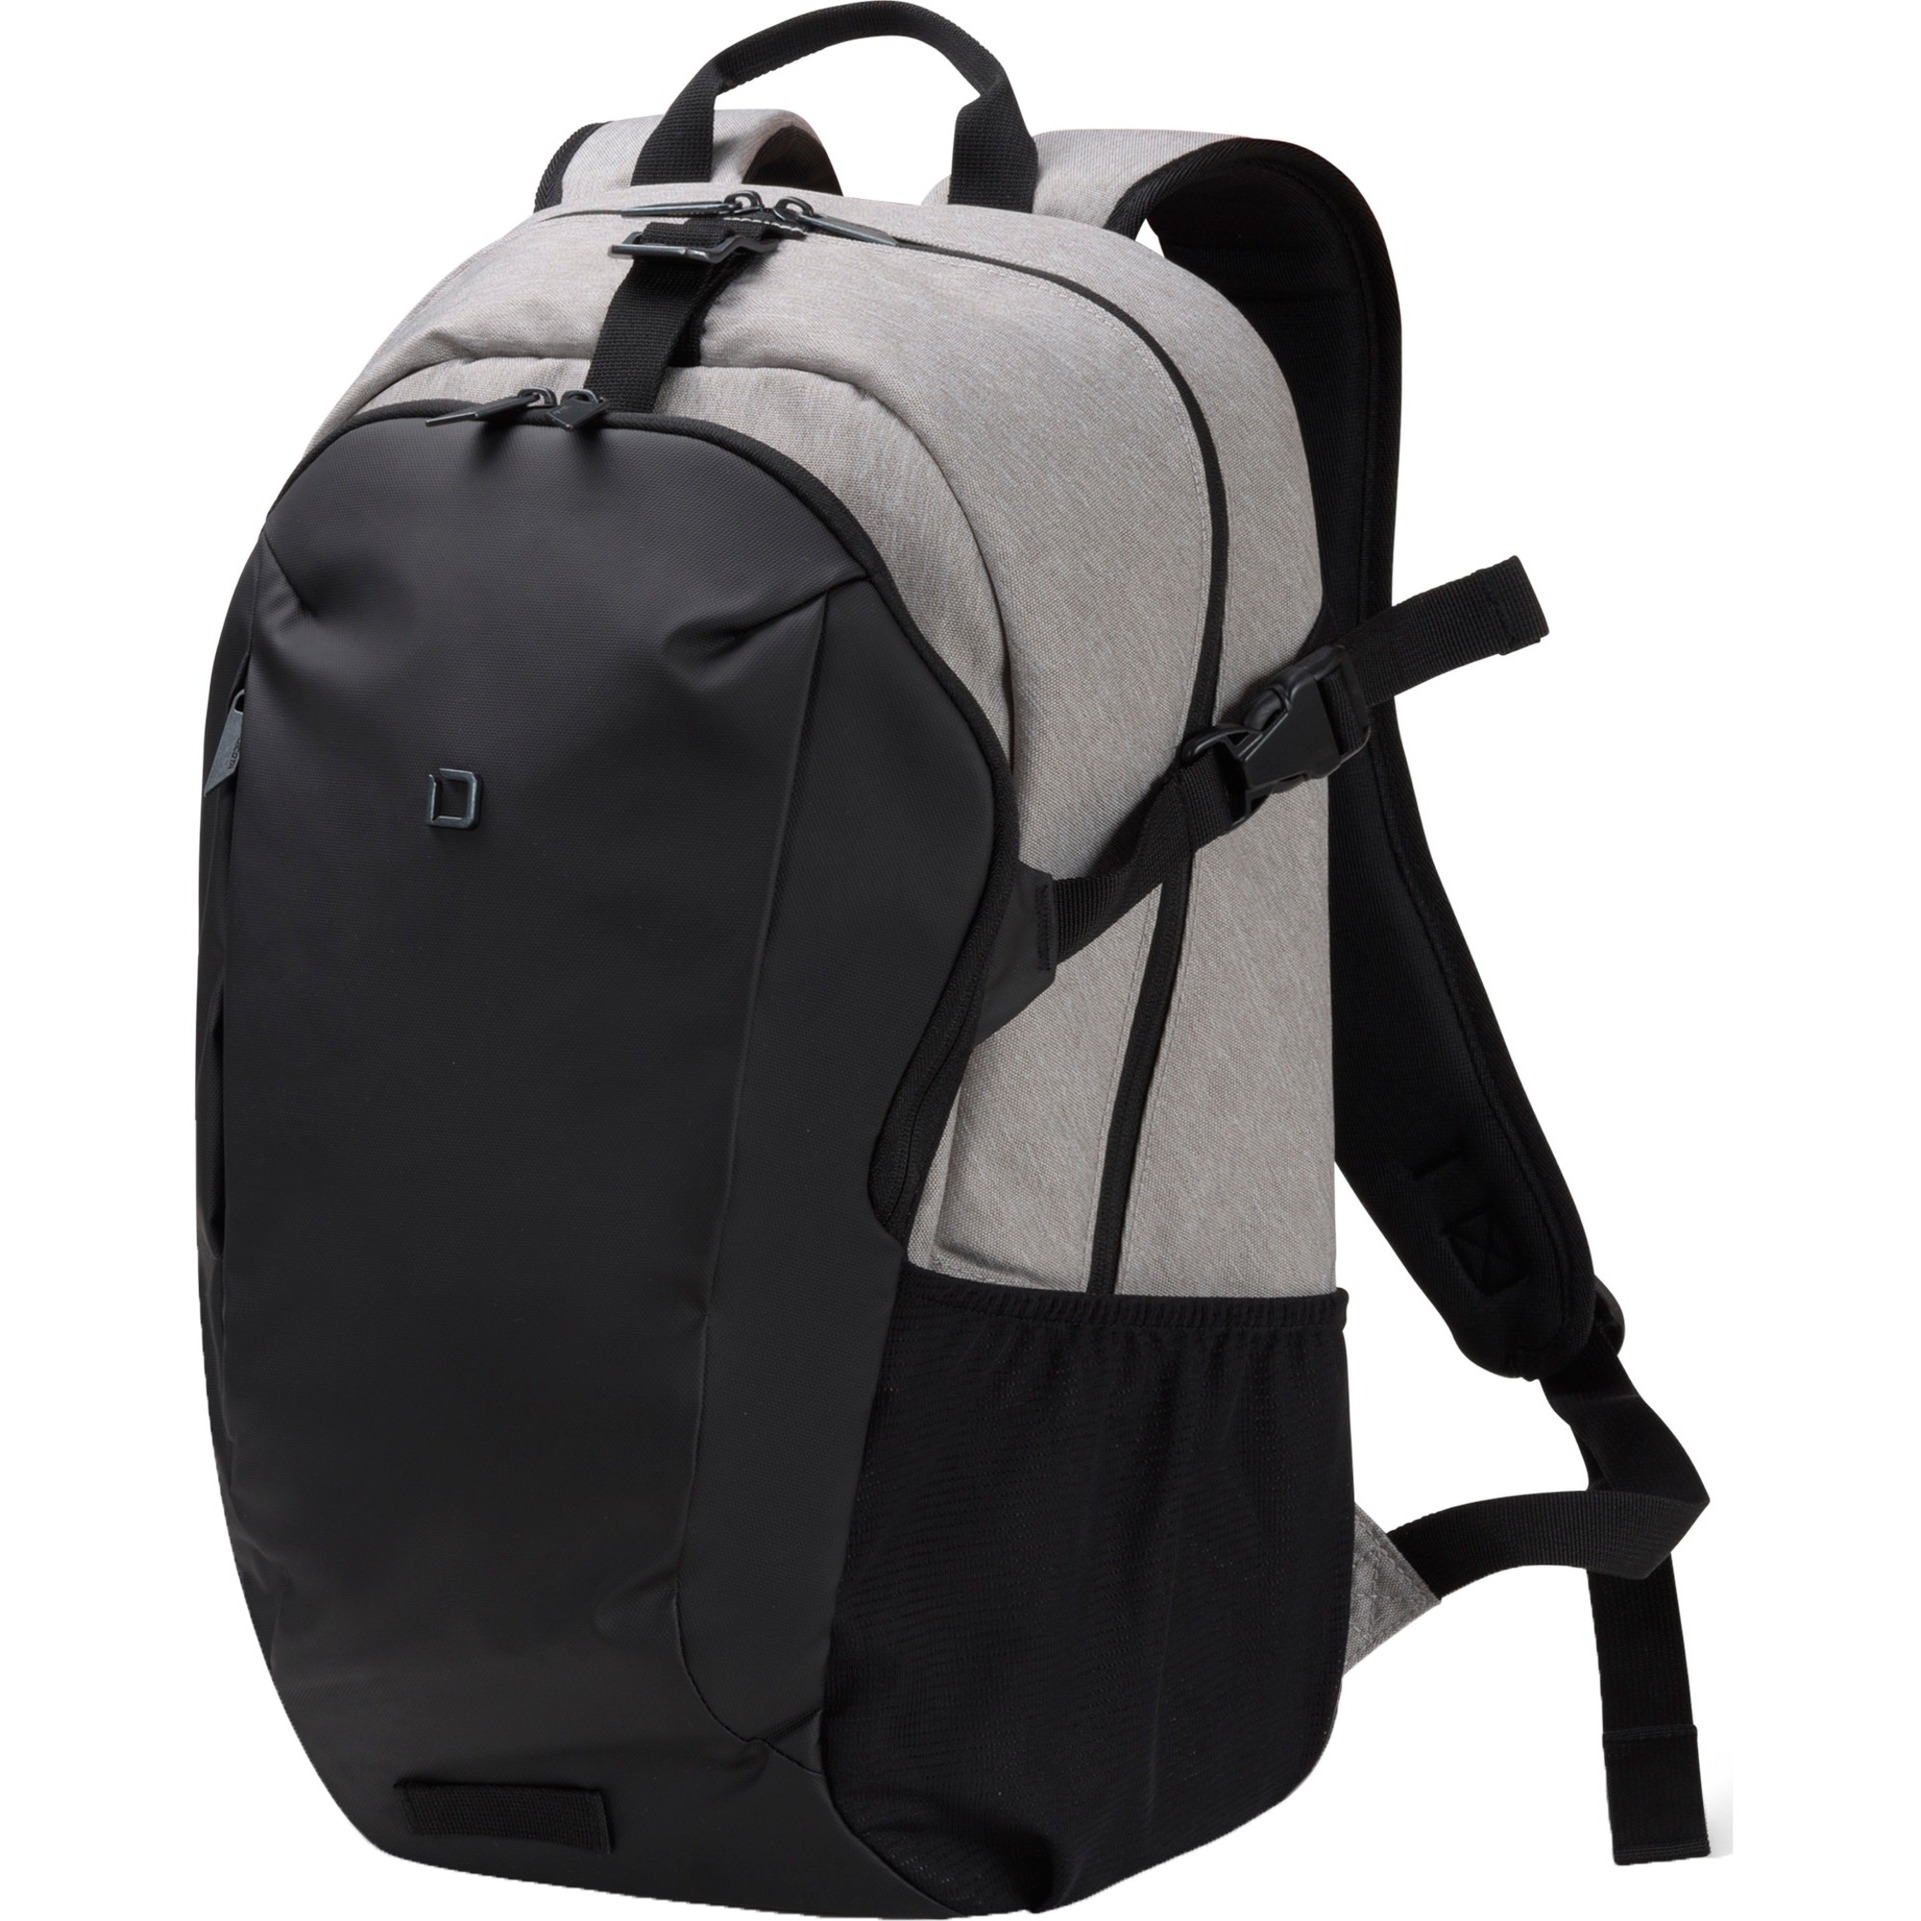 Image of Alternate - Backpack GO, Rucksack online einkaufen bei Alternate